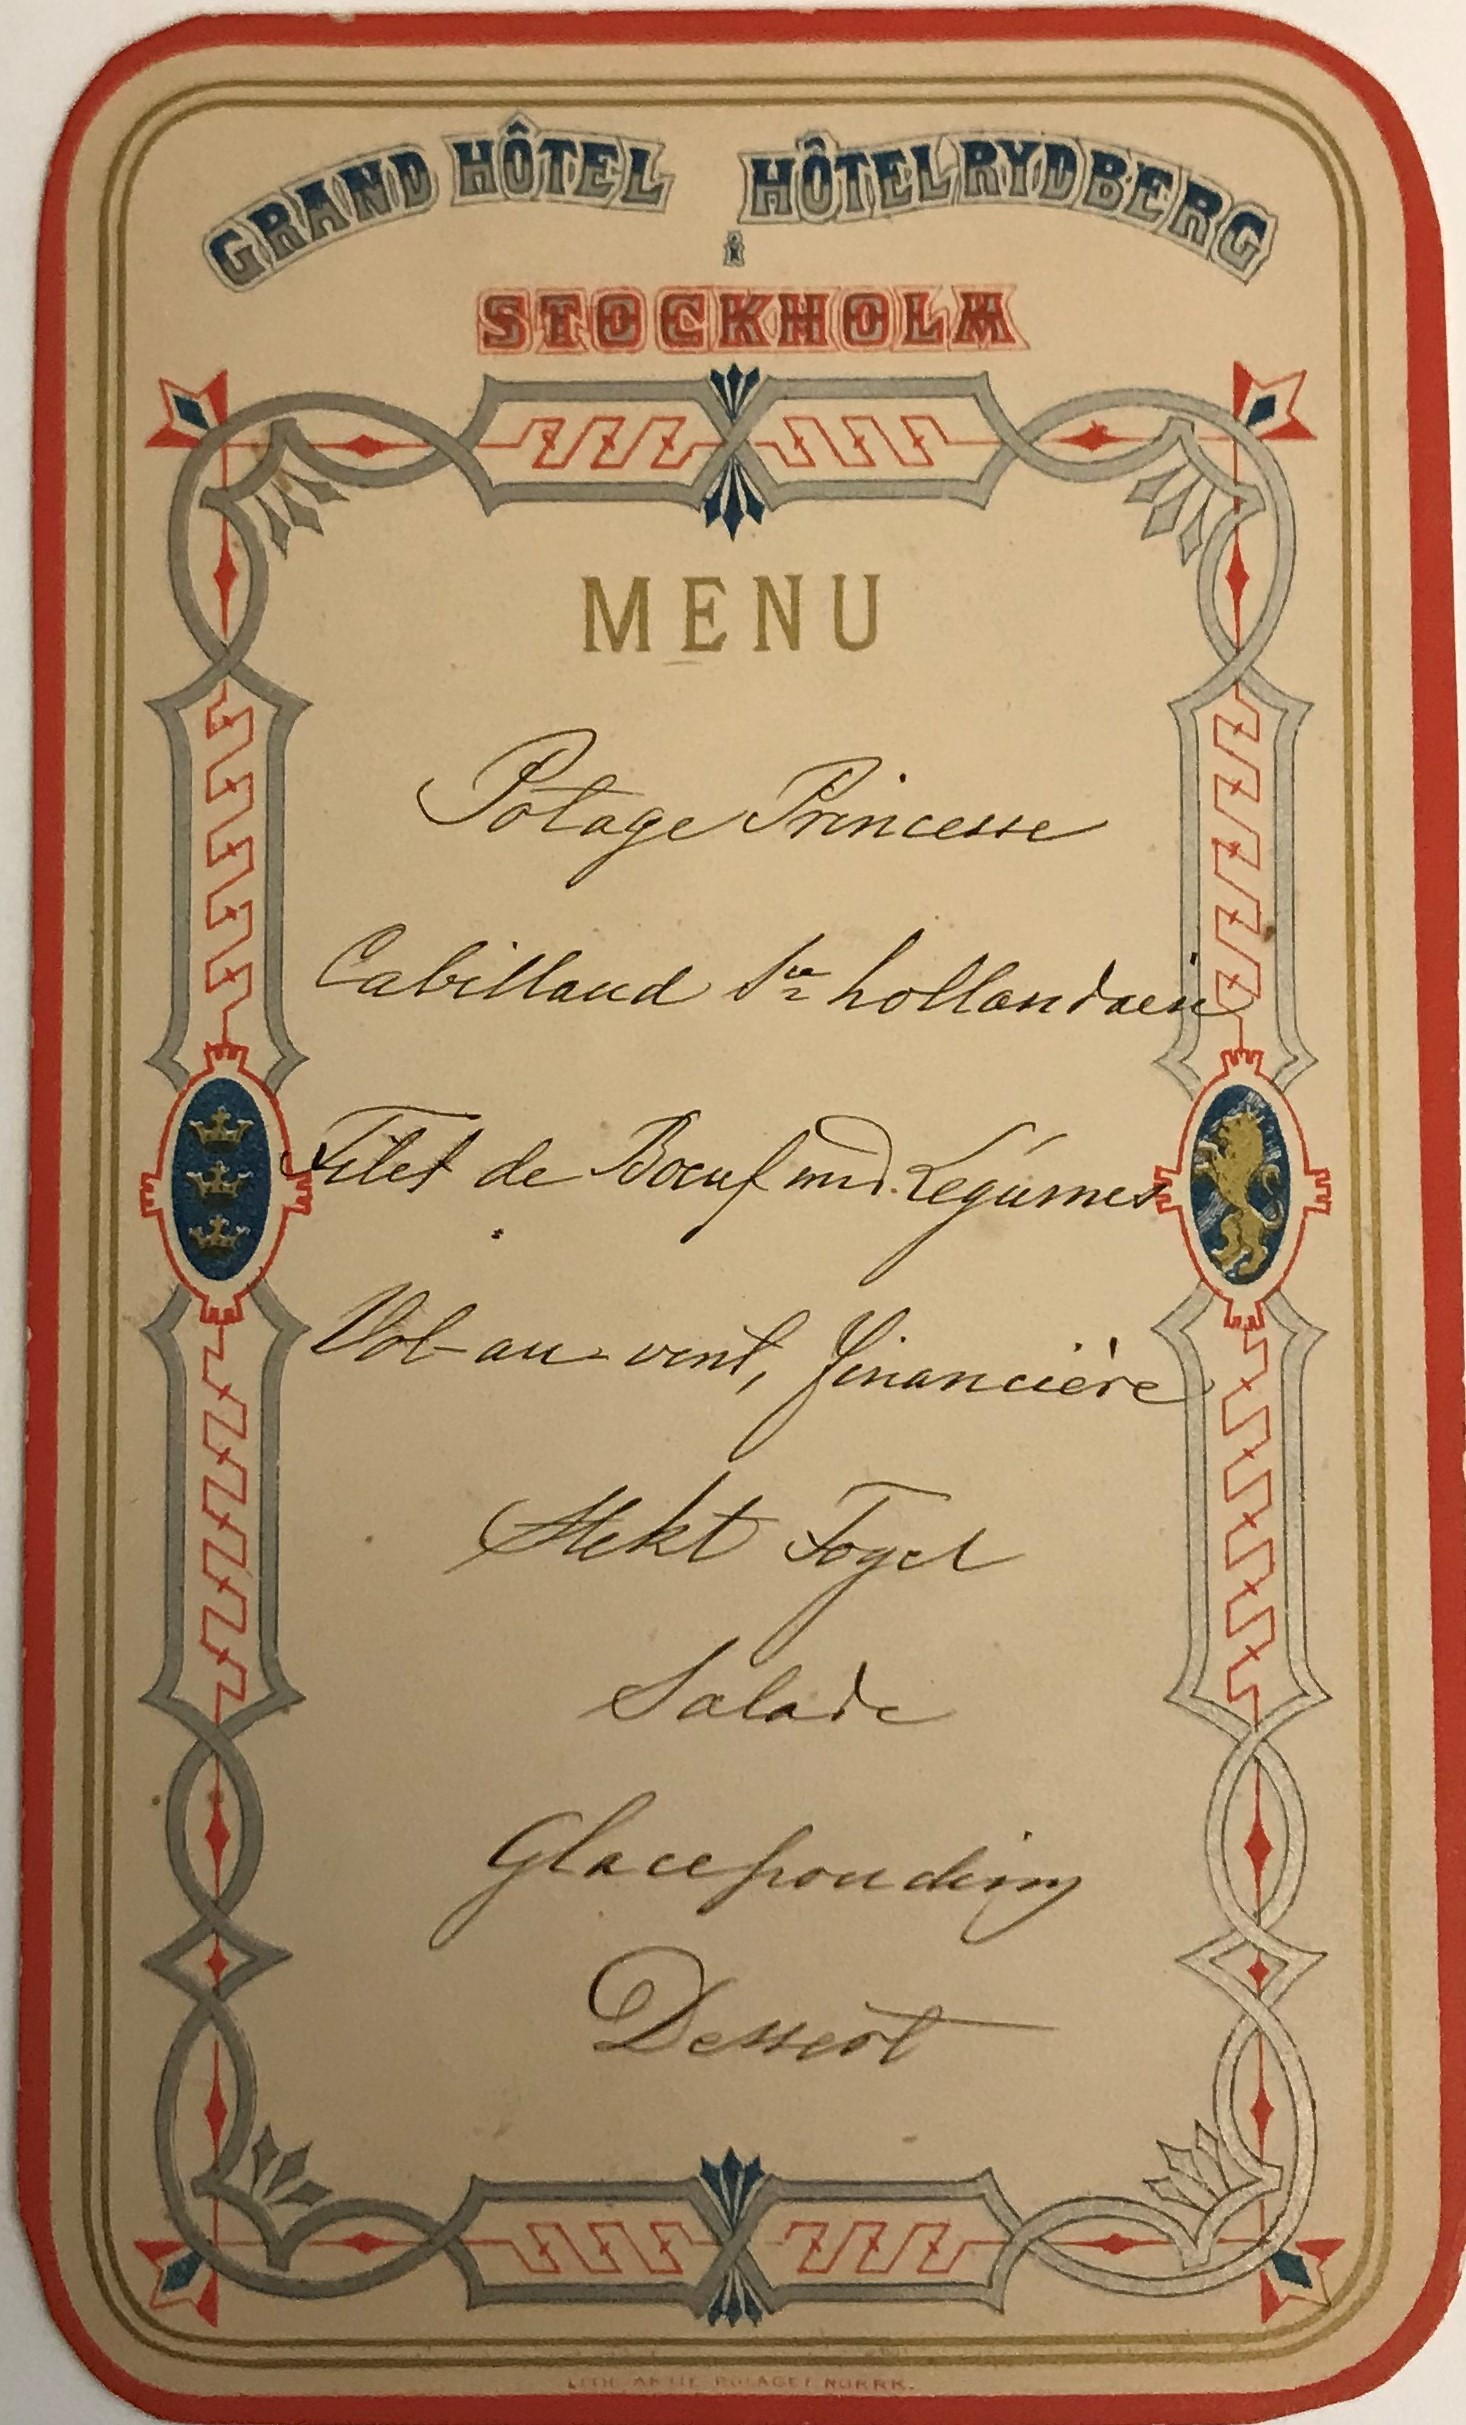 Handskriven åtta rätters-meny på ett tryckt ark med dekorativa girlander och rubriken "Grand hotell, Hotel Rydberg, Stockholm" 